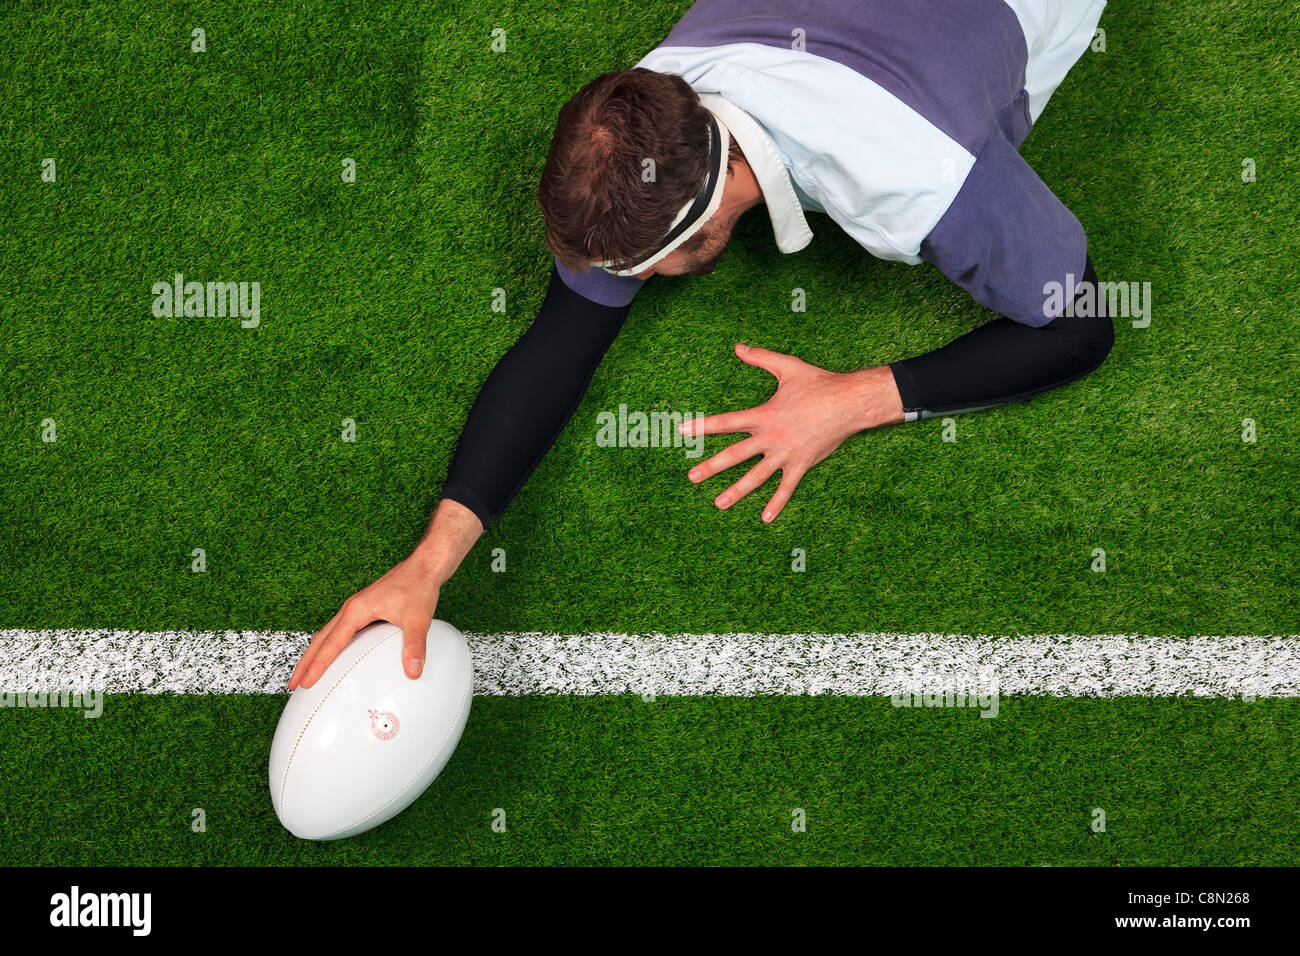 Obenliegende Foto ein Rugby-Spieler erstreckt sich über die Linie, einen Versuch mit einer Hand auf den ball zu erzielen. Stockfoto